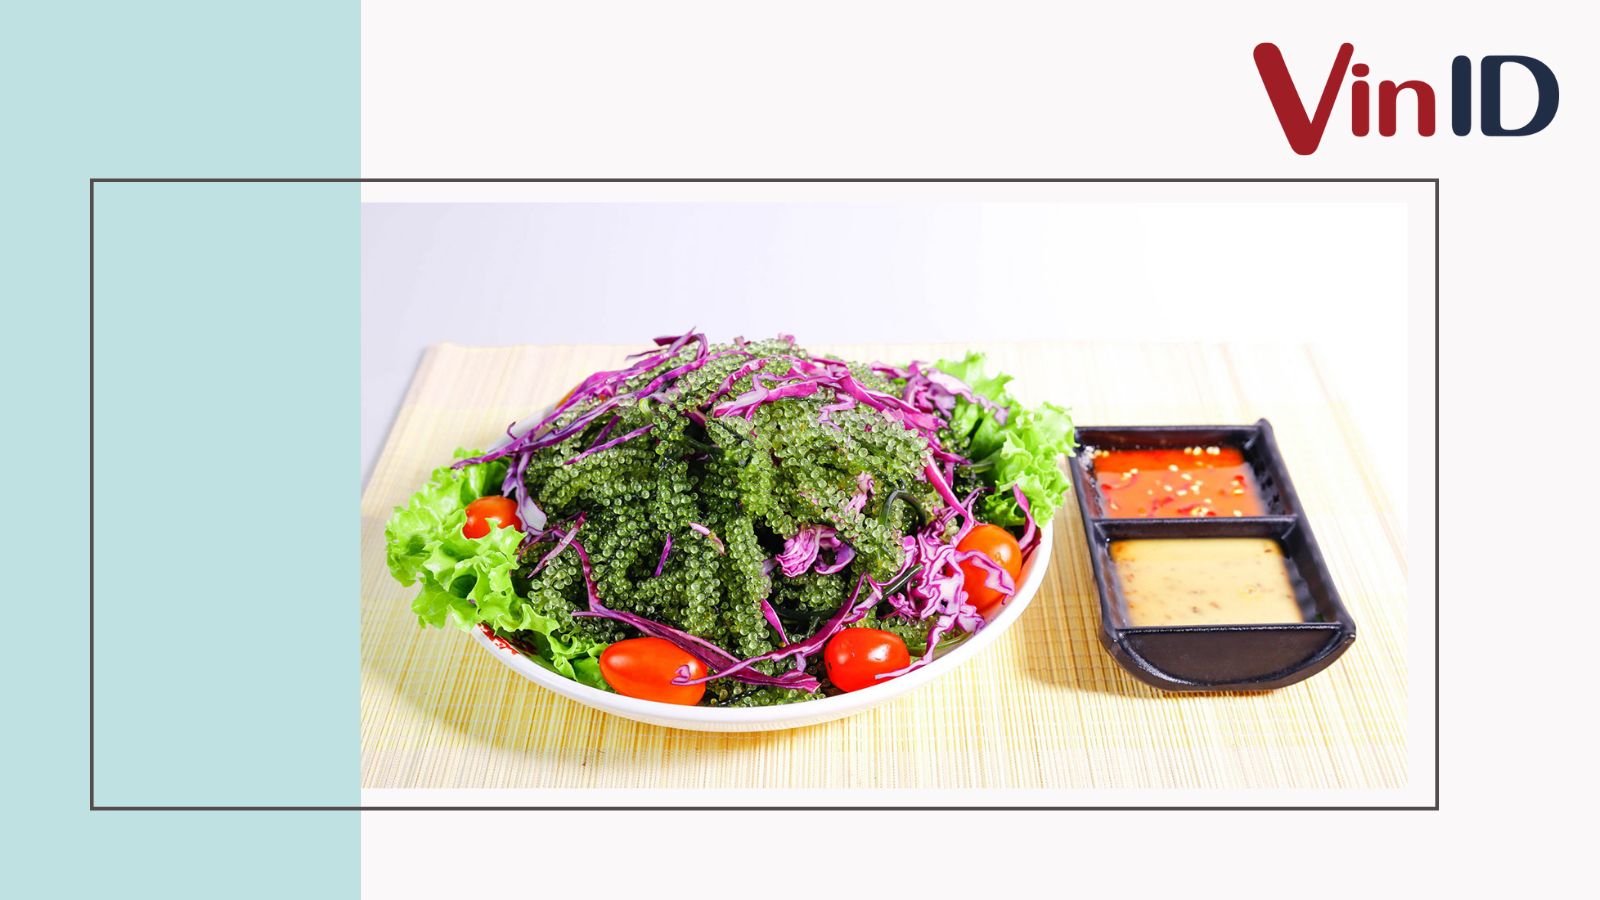 Món salad rong nho sốt mè rang - Một món ngon đơn giản hấp dẫn